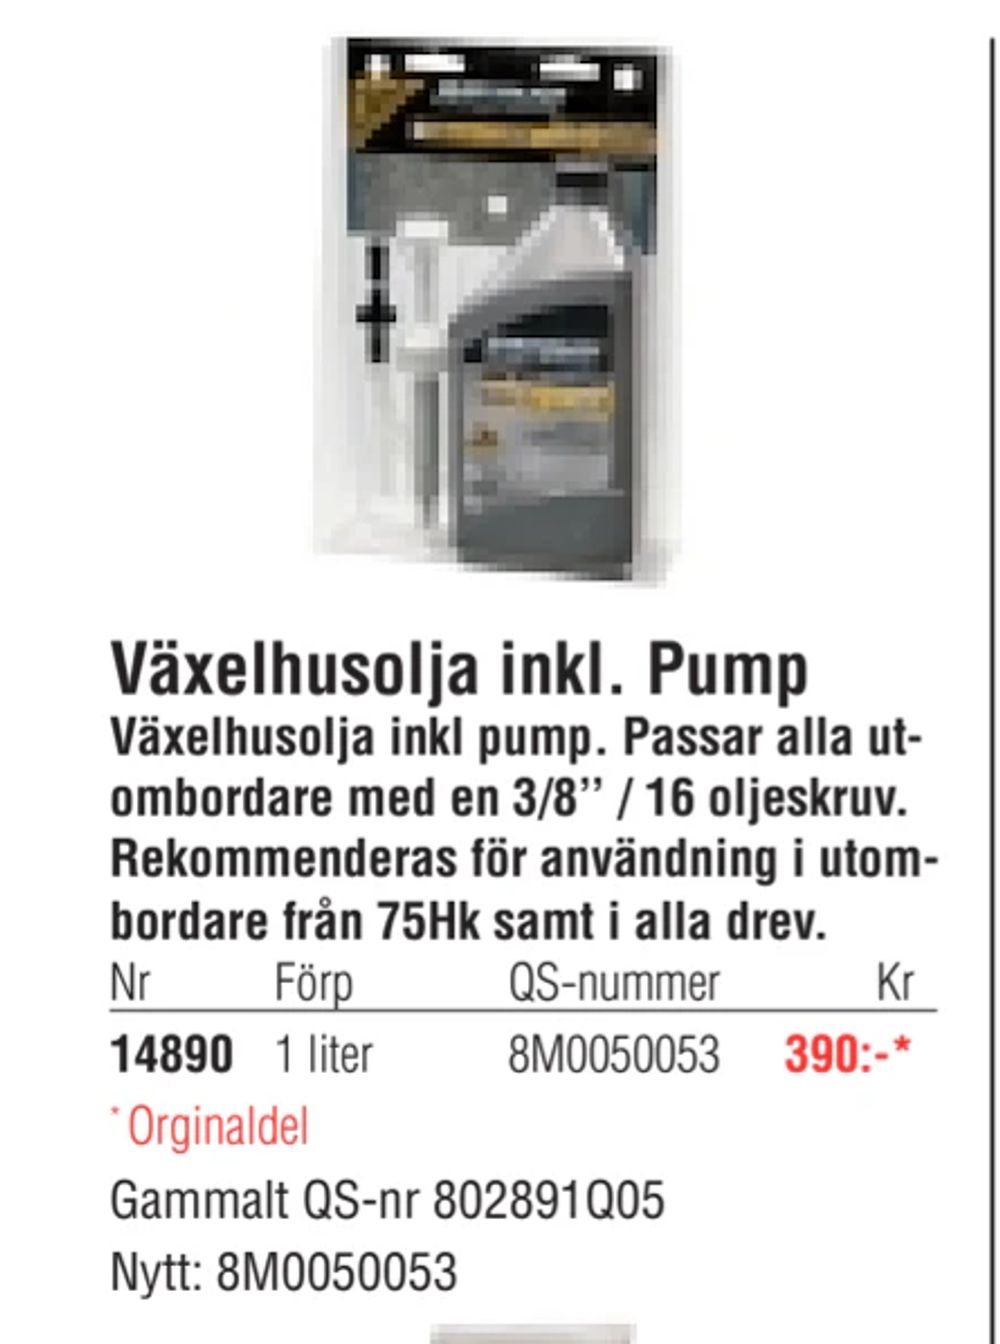 Erbjudanden på Växelhusolja inkl. Pump från Erlandsons Brygga för 390 kr